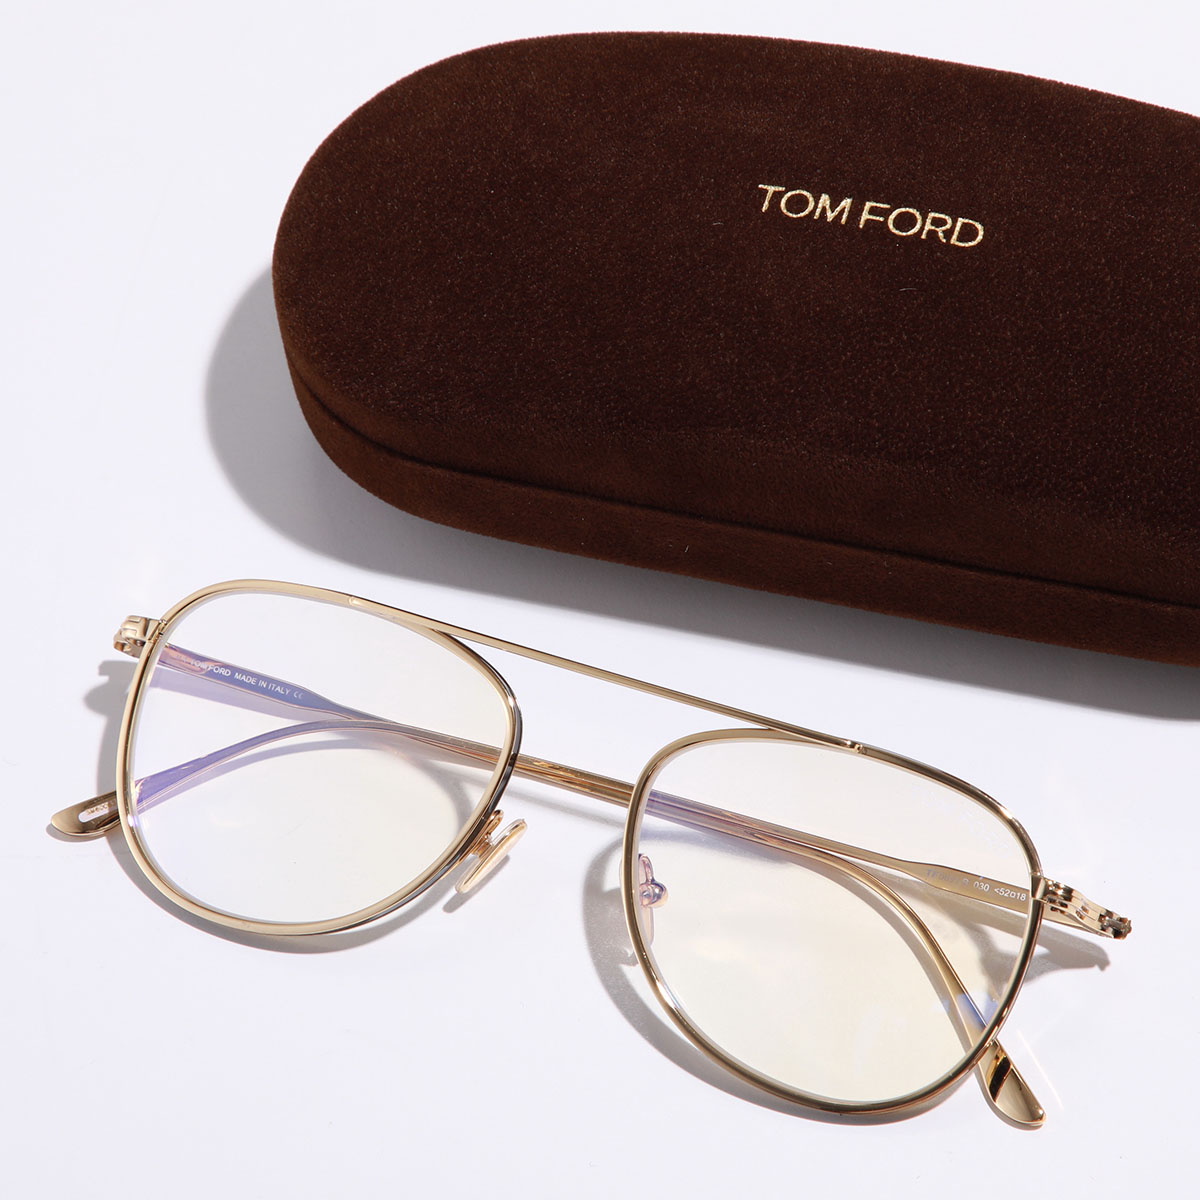 TOM FORD トムフォード メガネ TF5691-B レディース ティアドロップ型 眼鏡 めがね...